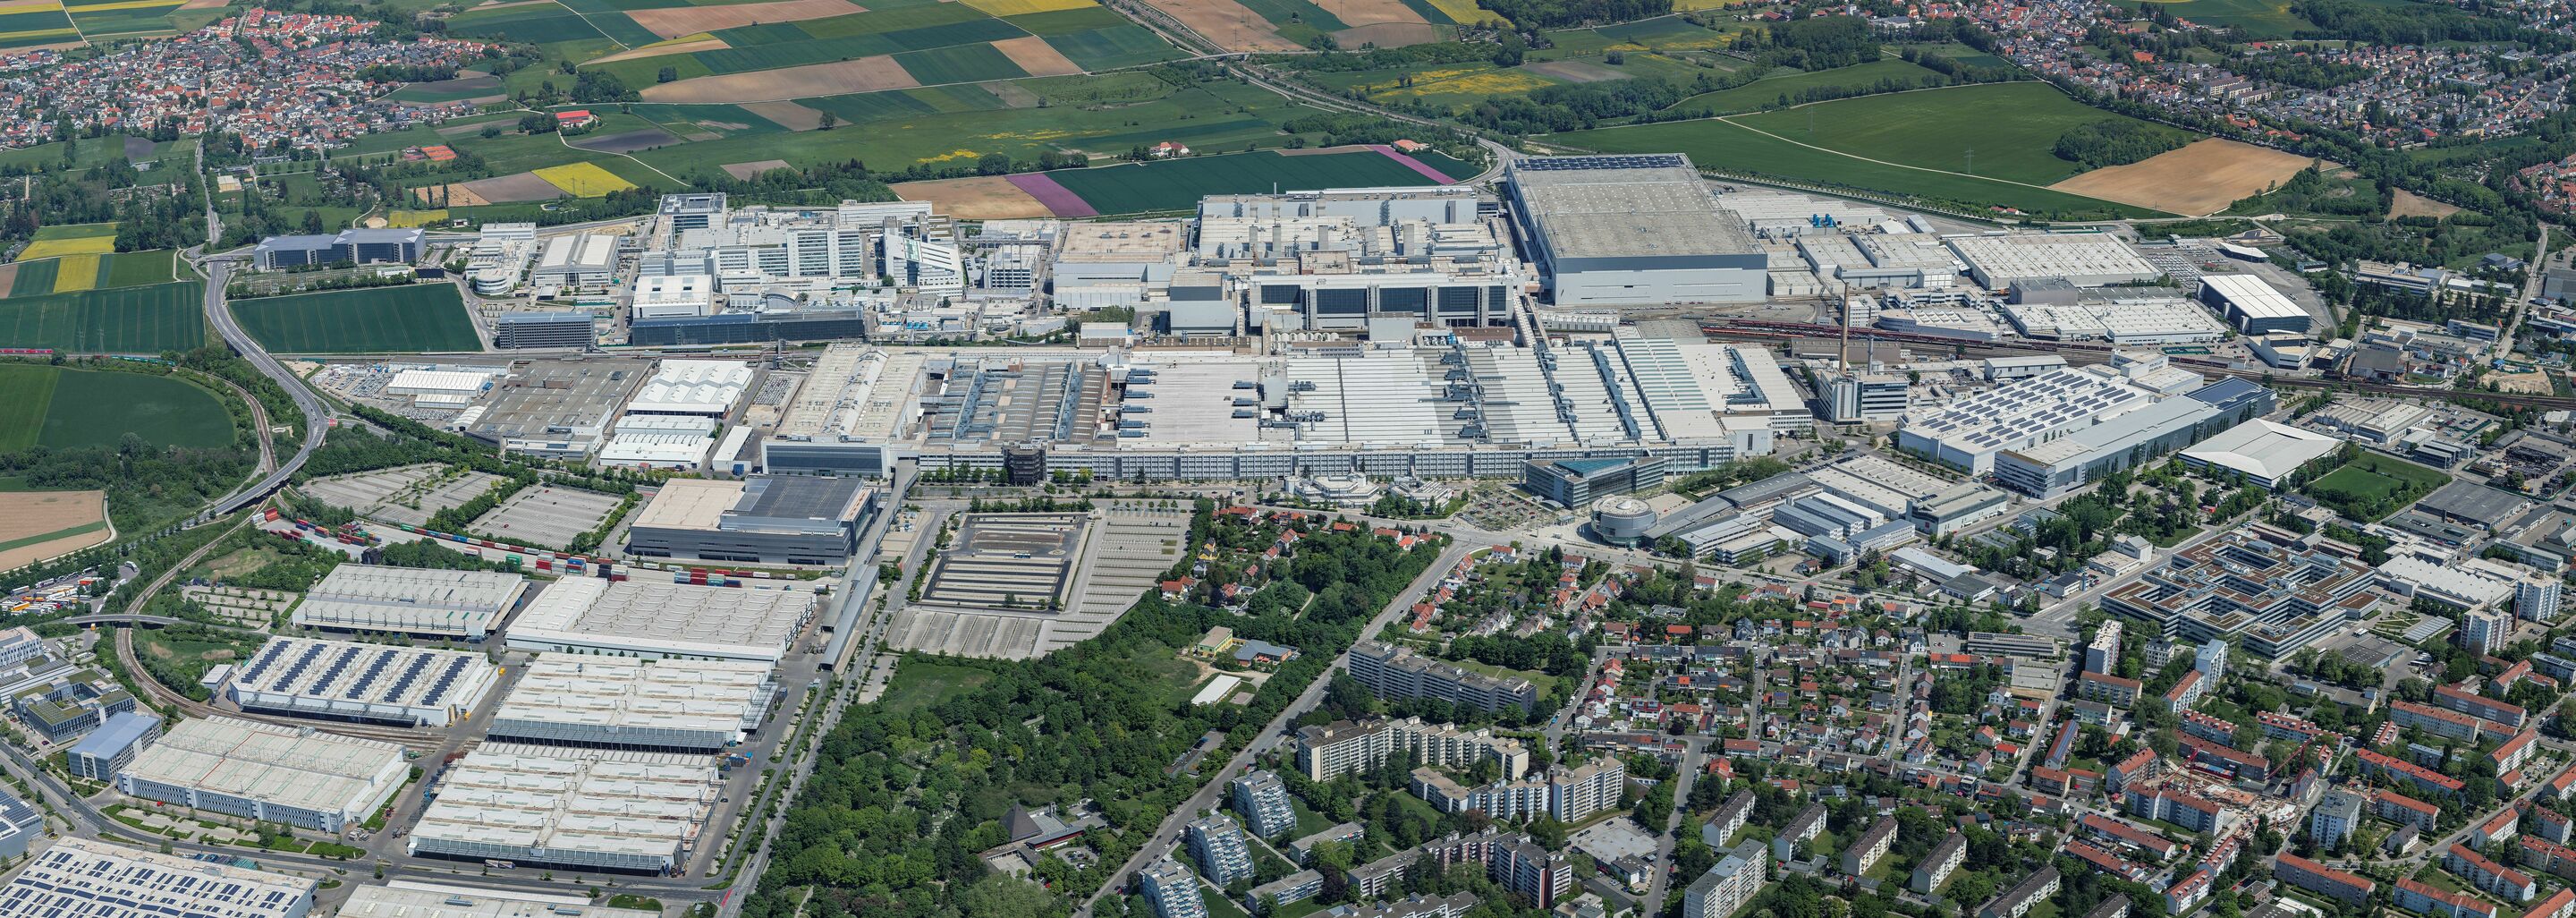 Das Werk in Ingolstadt ist die größte Produktionsstätte des Audi-Konzerns